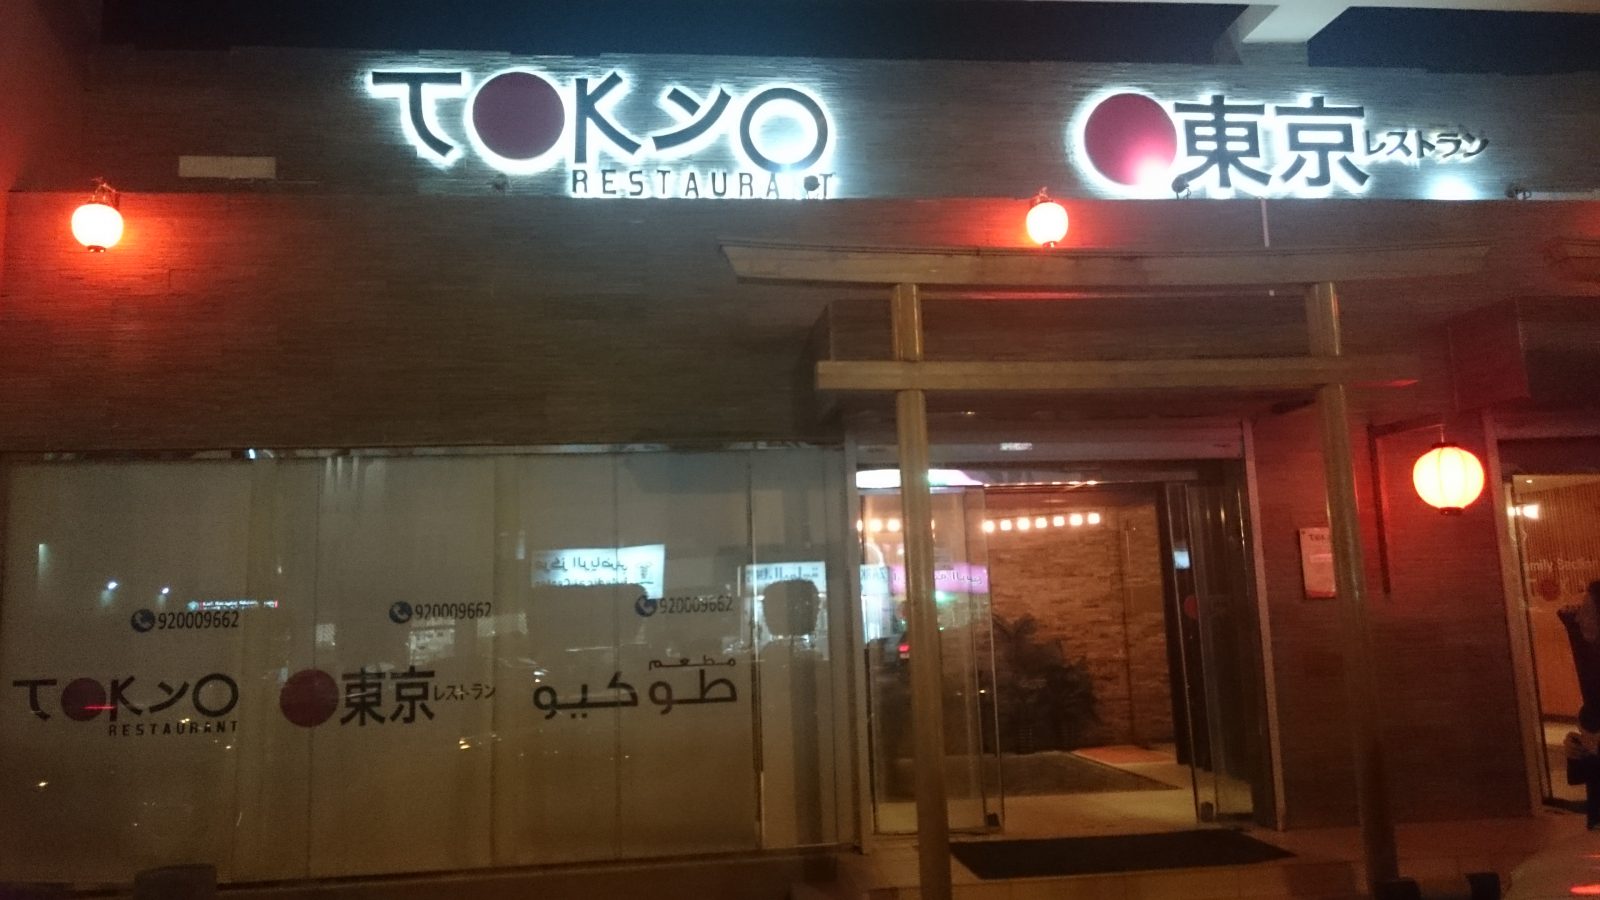 أشهر المطاعم اليابانية في الرياض.. العناوين ومواعيد العمل